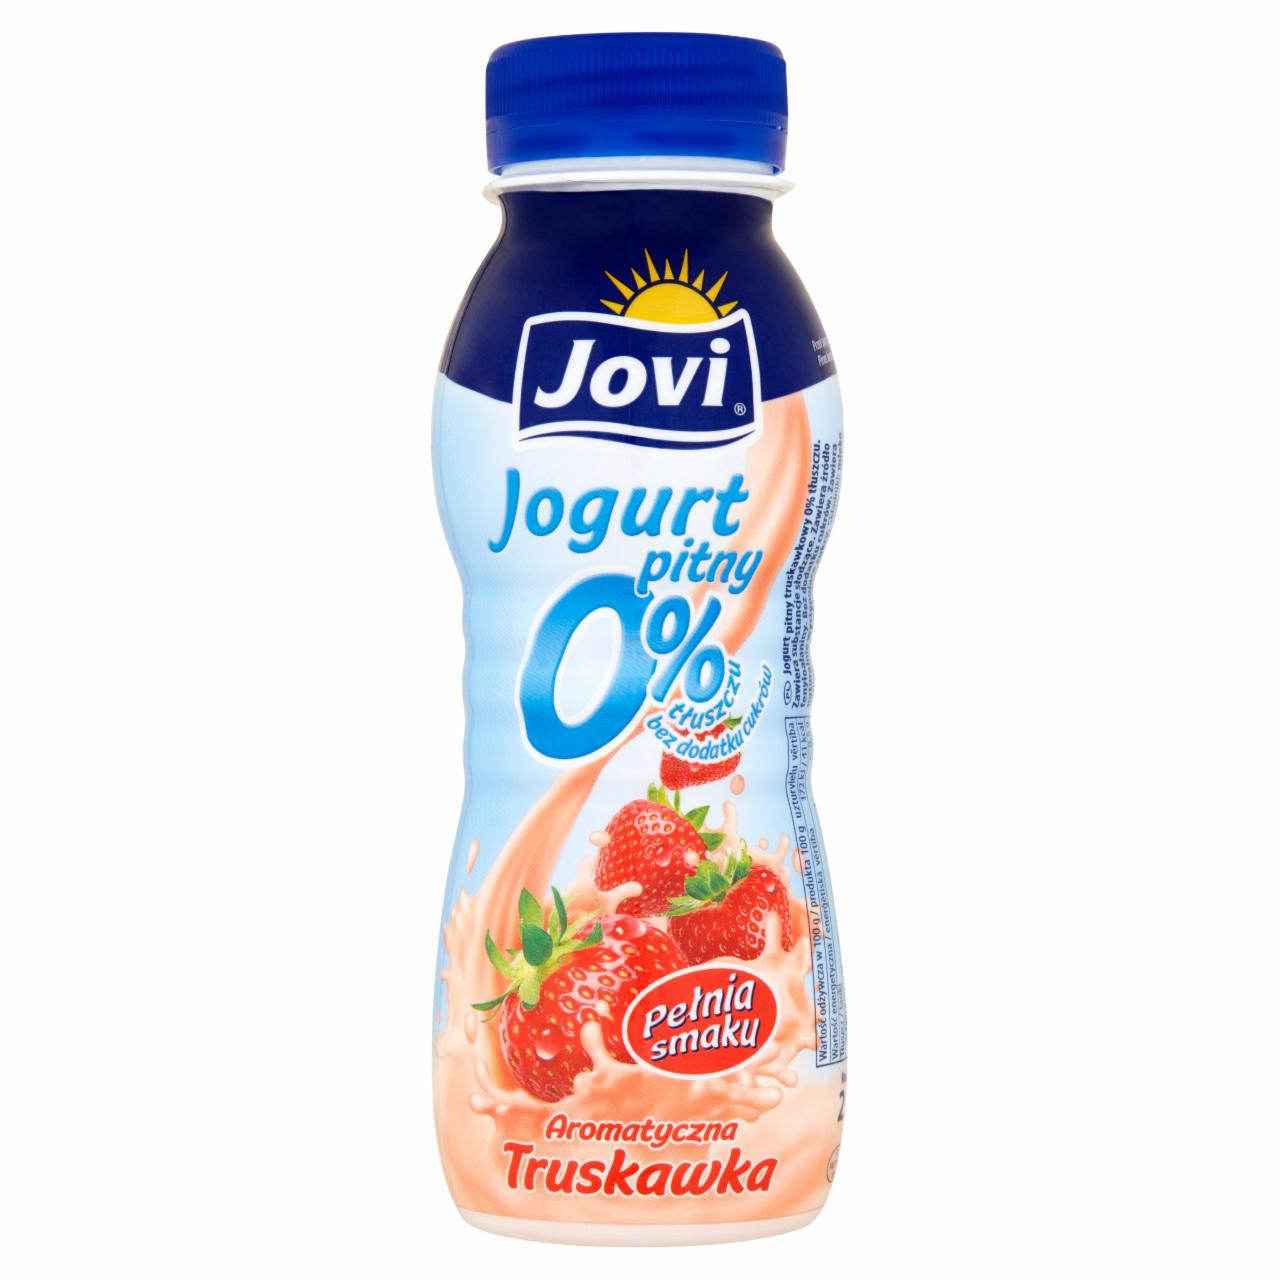 Zdjęcia - Jovi Jogurt pitny 0% aromatyczna truskawka 250 g